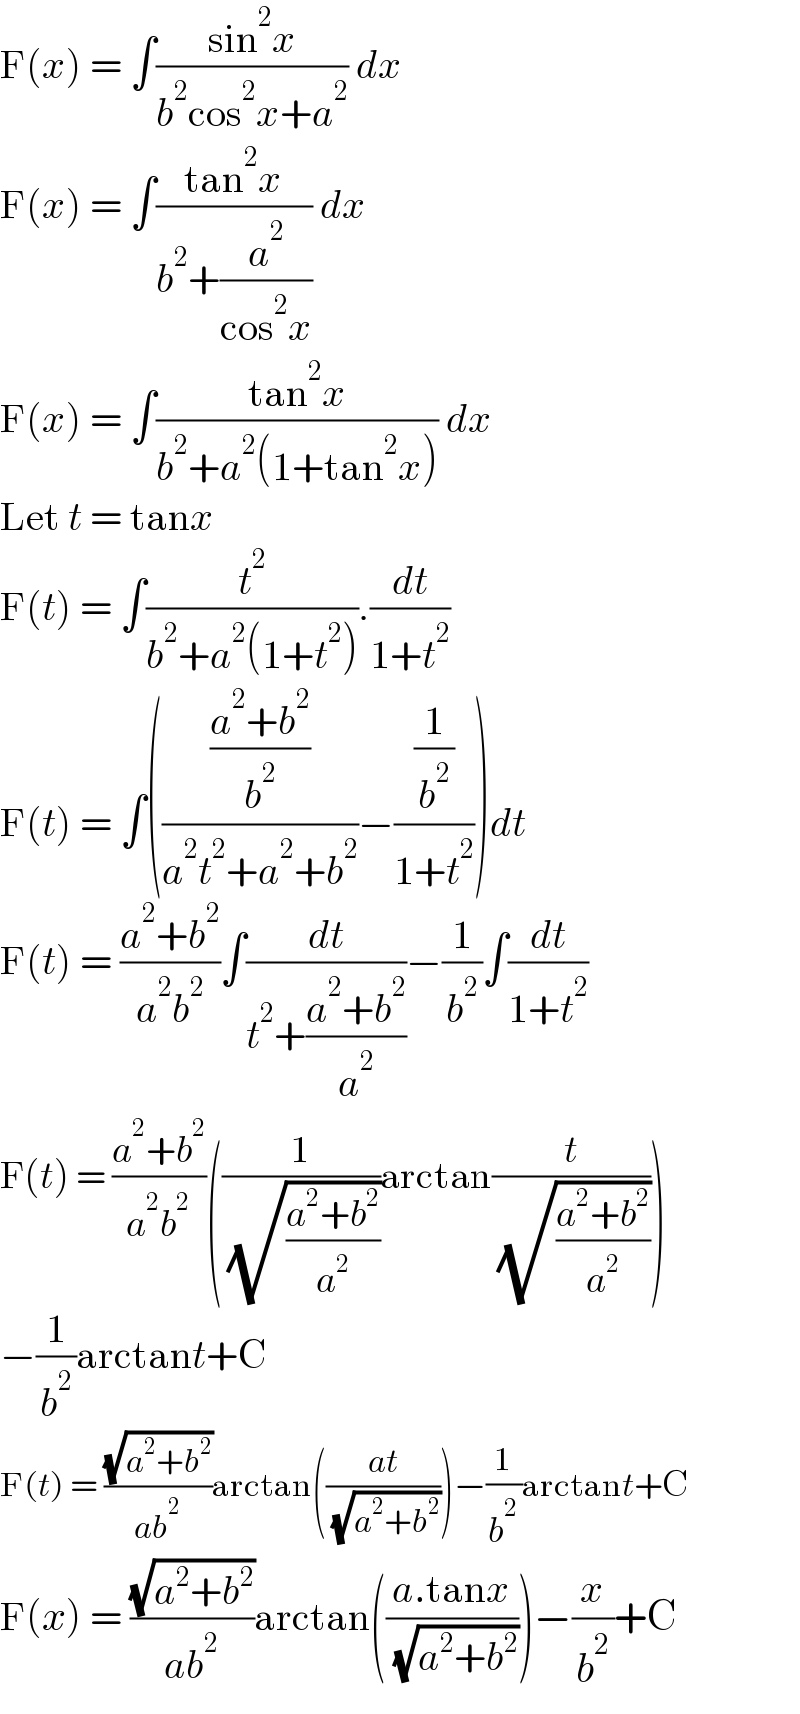 F(x) = ∫((sin^2 x)/(b^2 cos^2 x+a^2 )) dx  F(x) = ∫((tan^2 x)/(b^2 +(a^2 /(cos^2 x)))) dx  F(x) = ∫((tan^2 x)/(b^2 +a^2 (1+tan^2 x))) dx  Let t = tanx  F(t) = ∫(t^2 /(b^2 +a^2 (1+t^2 ))).(dt/(1+t^2 ))  F(t) = ∫((((a^2 +b^2 )/b^2 )/(a^2 t^2 +a^2 +b^2 ))−((1/b^2 )/(1+t^2 )))dt  F(t) = ((a^2 +b^2 )/(a^2 b^2 ))∫(dt/(t^2 +((a^2 +b^2 )/a^2 )))−(1/b^2 )∫(dt/(1+t^2 ))  F(t) = ((a^2 +b^2 )/(a^2 b^2 ))((1/( (√((a^2 +b^2 )/a^2 ))))arctan(t/( (√((a^2 +b^2 )/a^2 )))))  −(1/b^2 )arctant+C  F(t) = ((√(a^2 +b^2 ))/(ab^2 ))arctan(((at)/( (√(a^2 +b^2 )))))−(1/b^2 )arctant+C  F(x) = ((√(a^2 +b^2 ))/(ab^2 ))arctan(((a.tanx)/( (√(a^2 +b^2 )))))−(x/b^2 )+C  